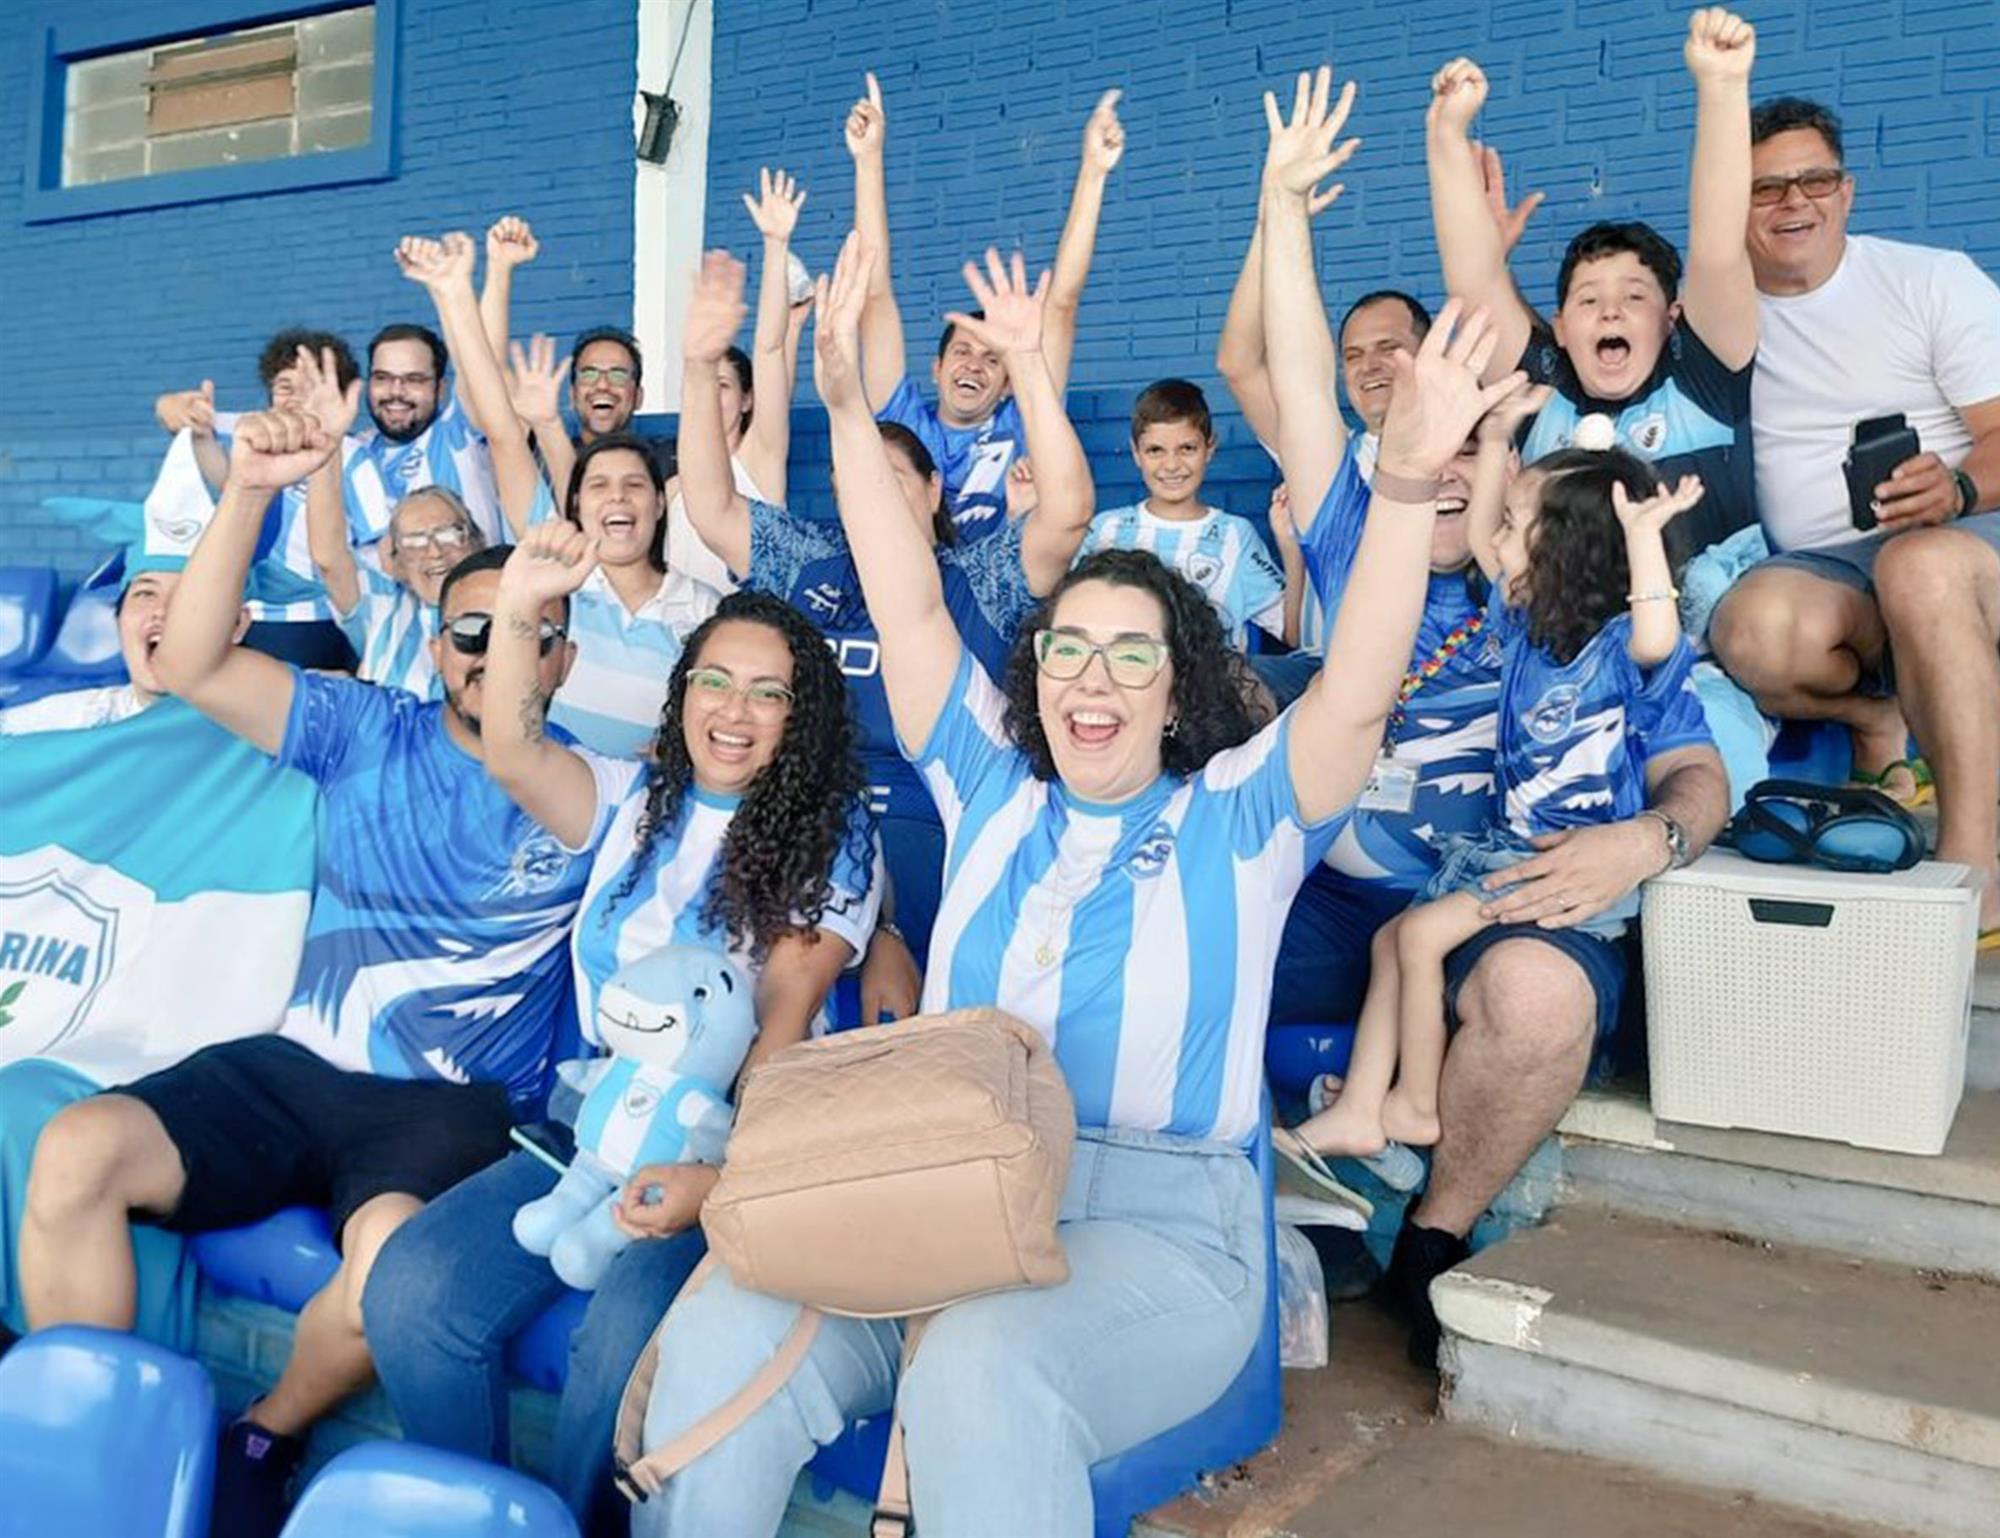 Torcida Tubautistas acompanha o seu primeiro jogo no Estádio do Café